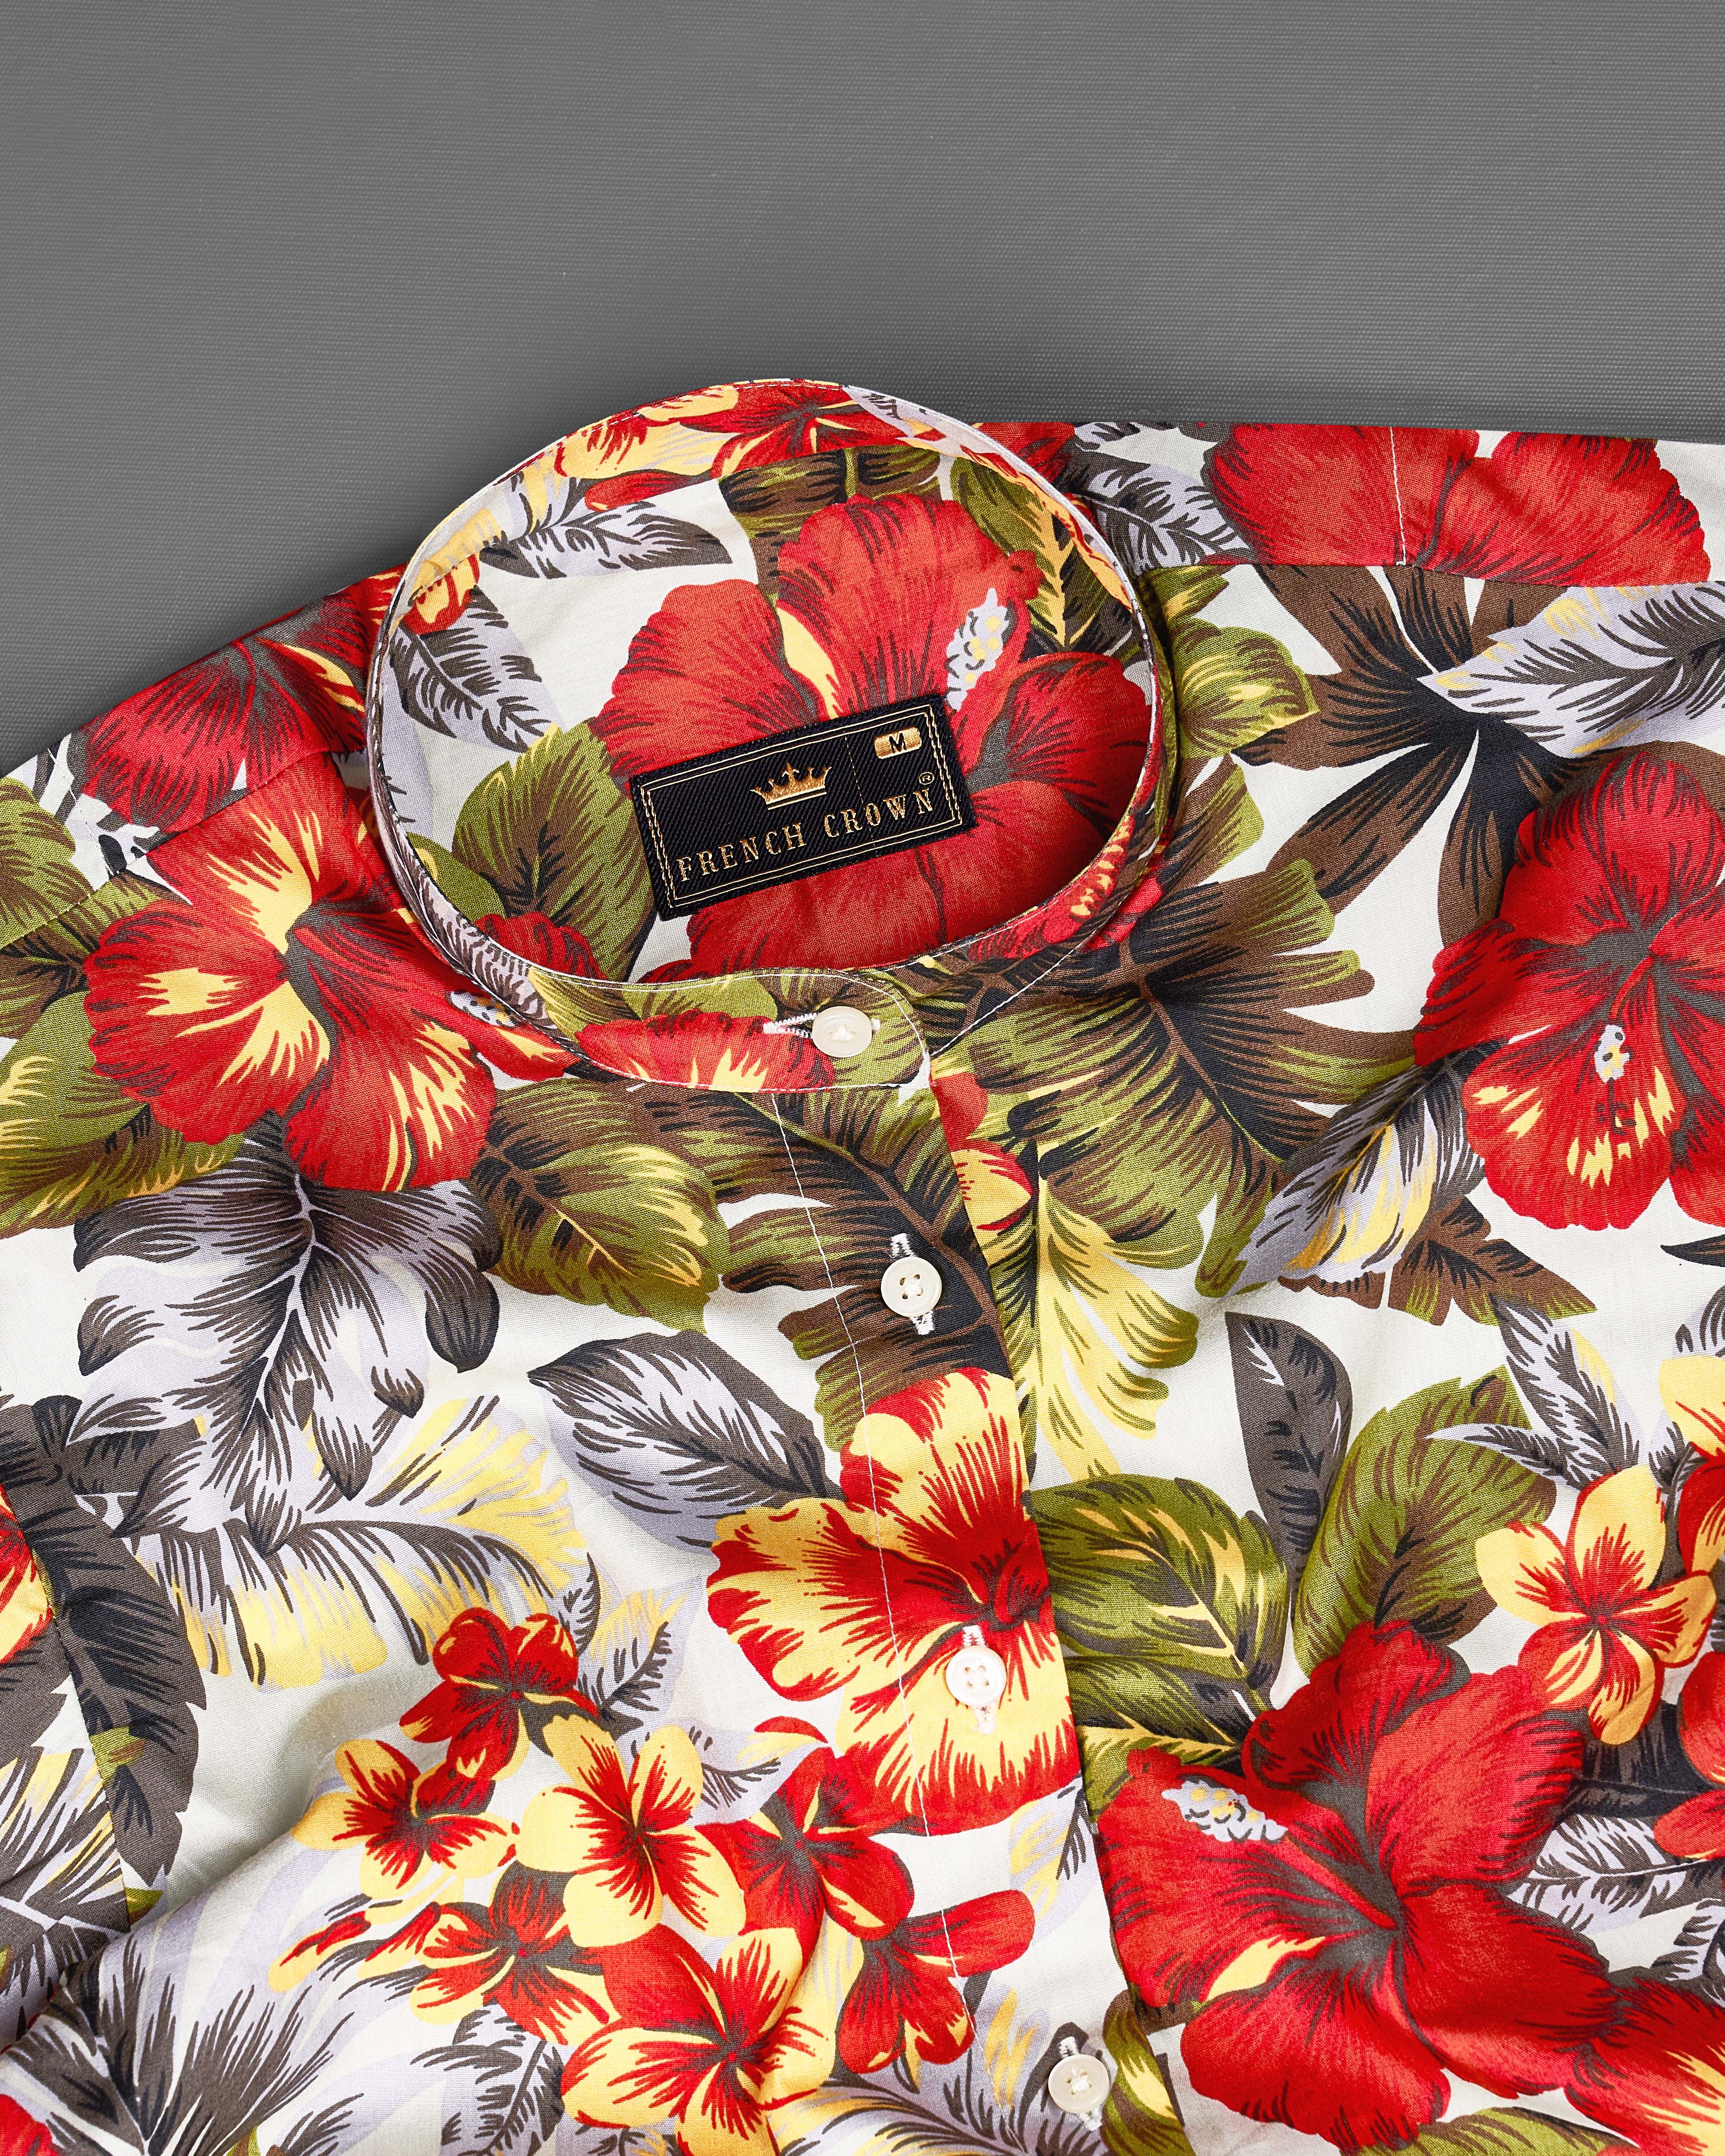 Jasper Red Multicolour Floral Printed Premium Cotton Shirt WS015-M-32, WS015-M-34, WS015-M-36, WS015-M-38, WS015-M-40, WS015-M-42